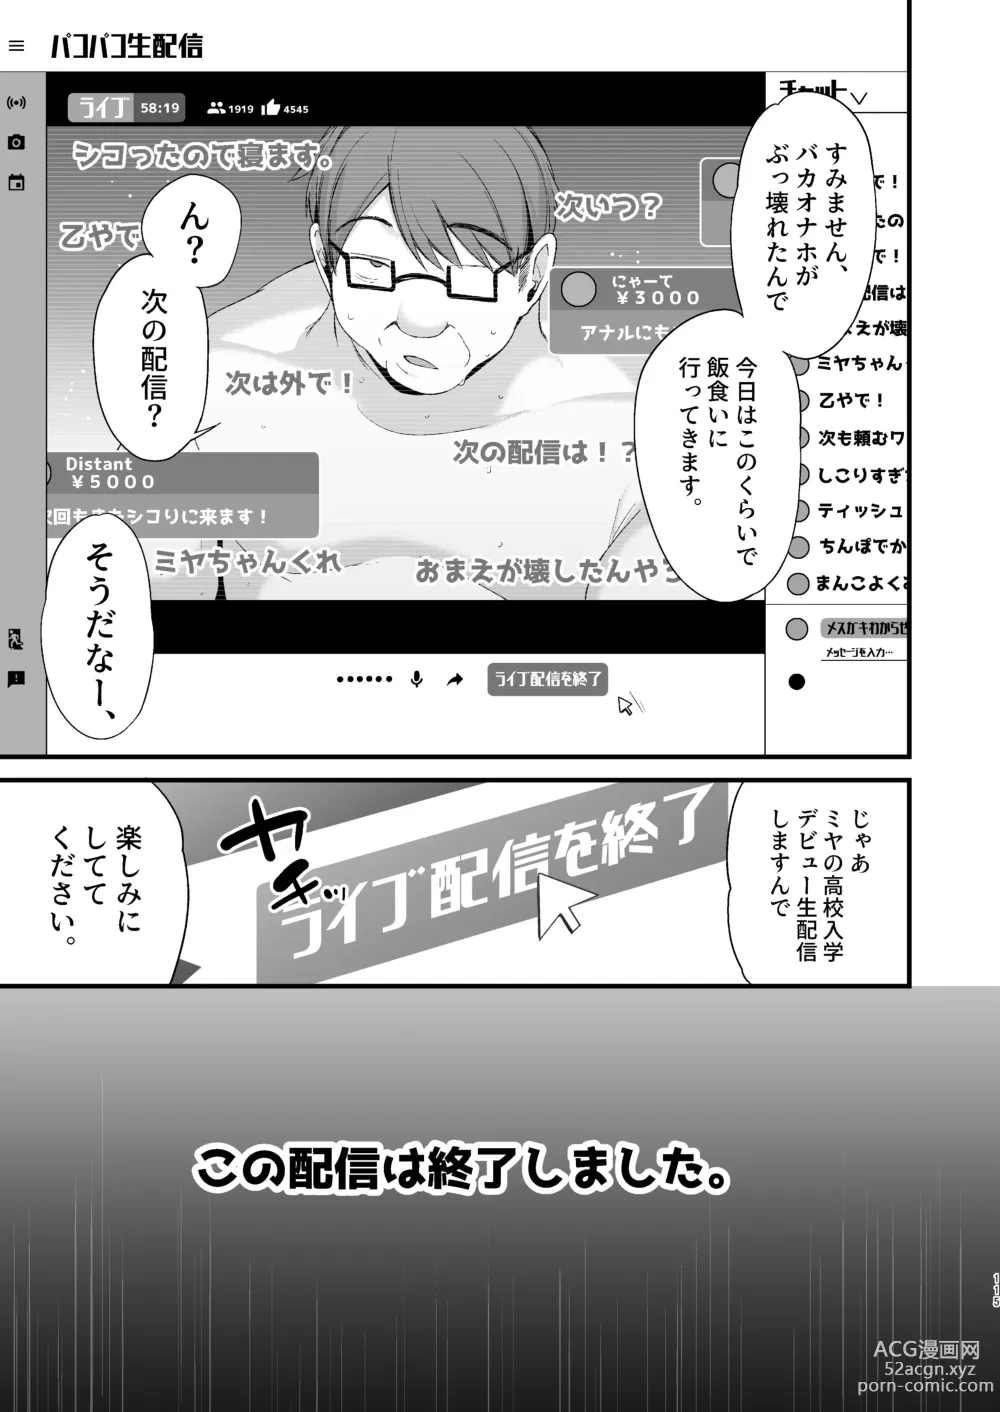 Page 114 of doujinshi Miya-chan 1-nen Choukyou Ge